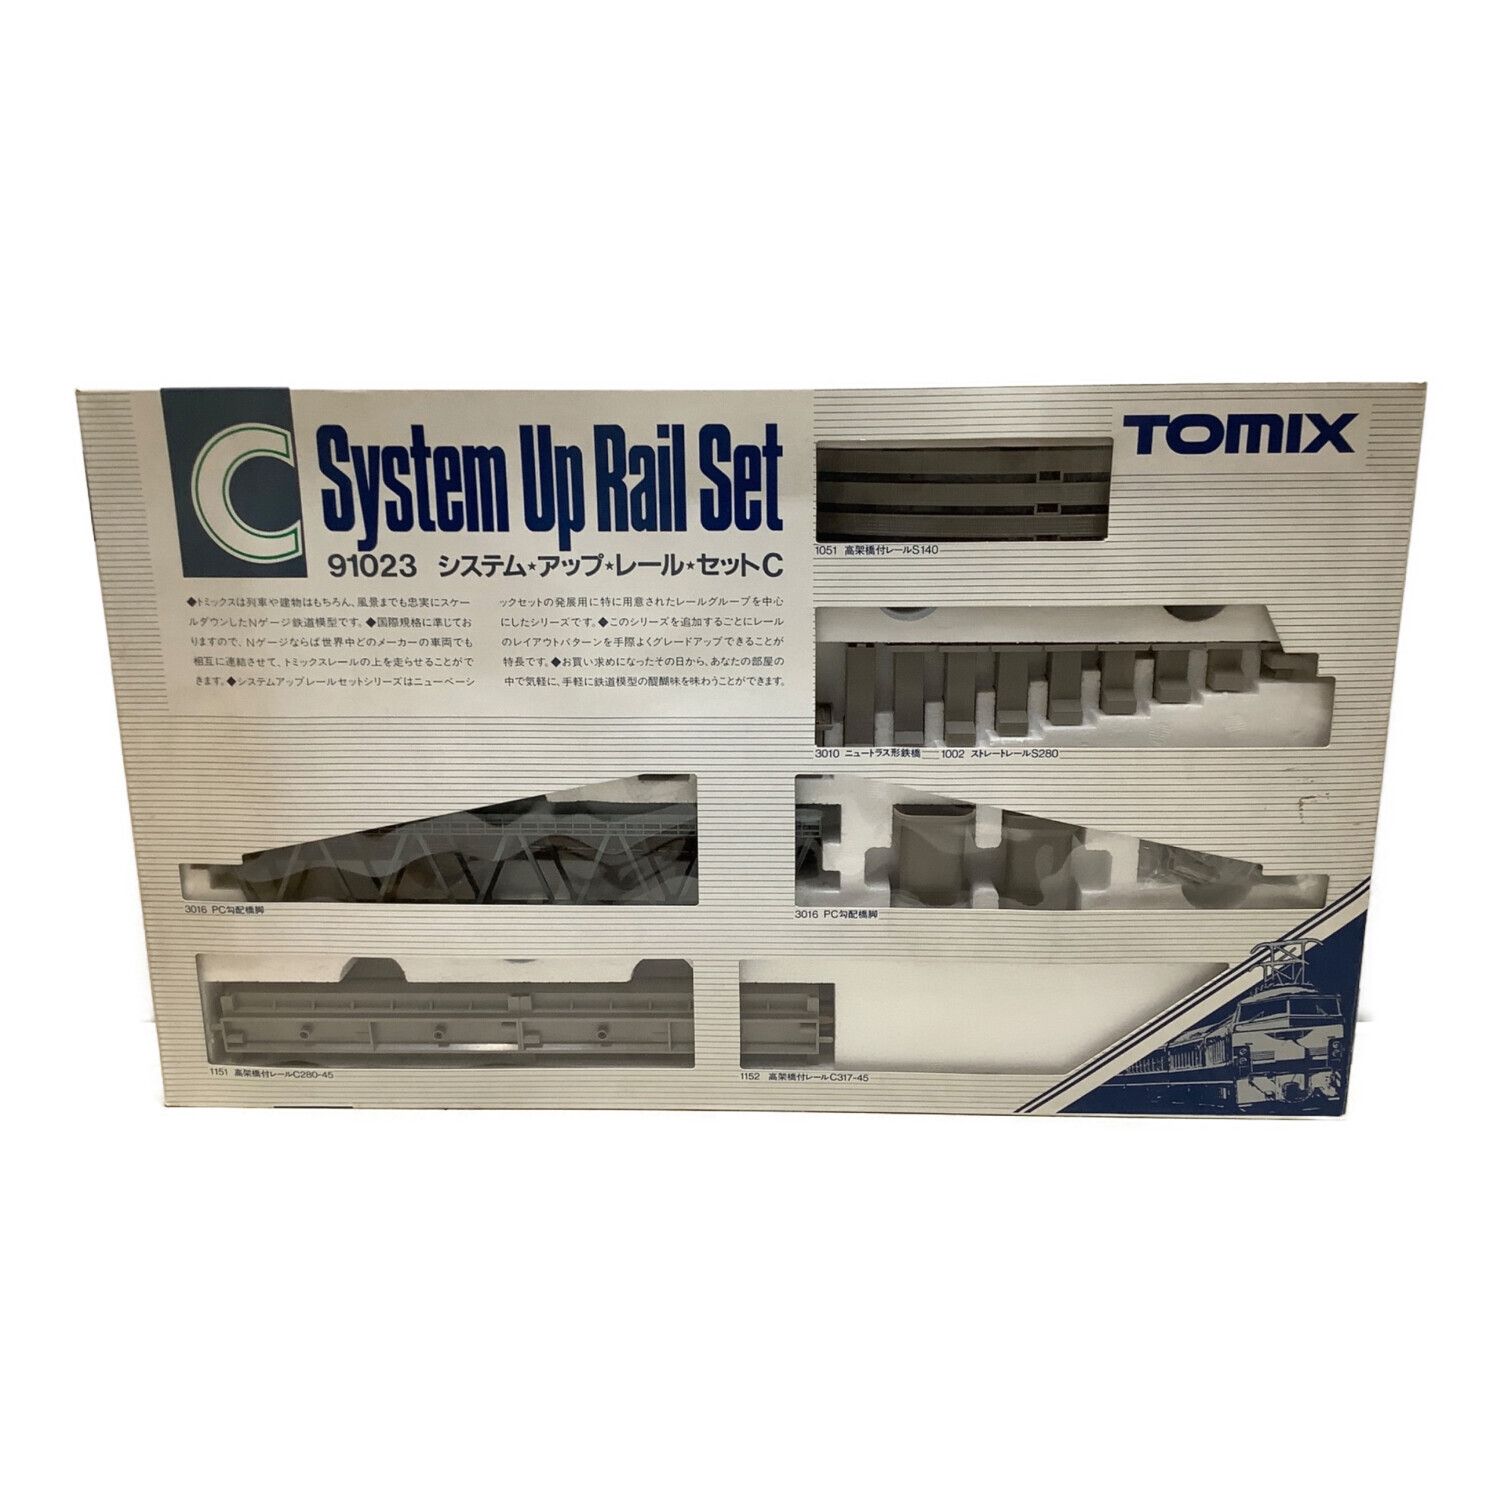 TOMIX (トミックス) Nゲージ システムアップレールセットC 91023